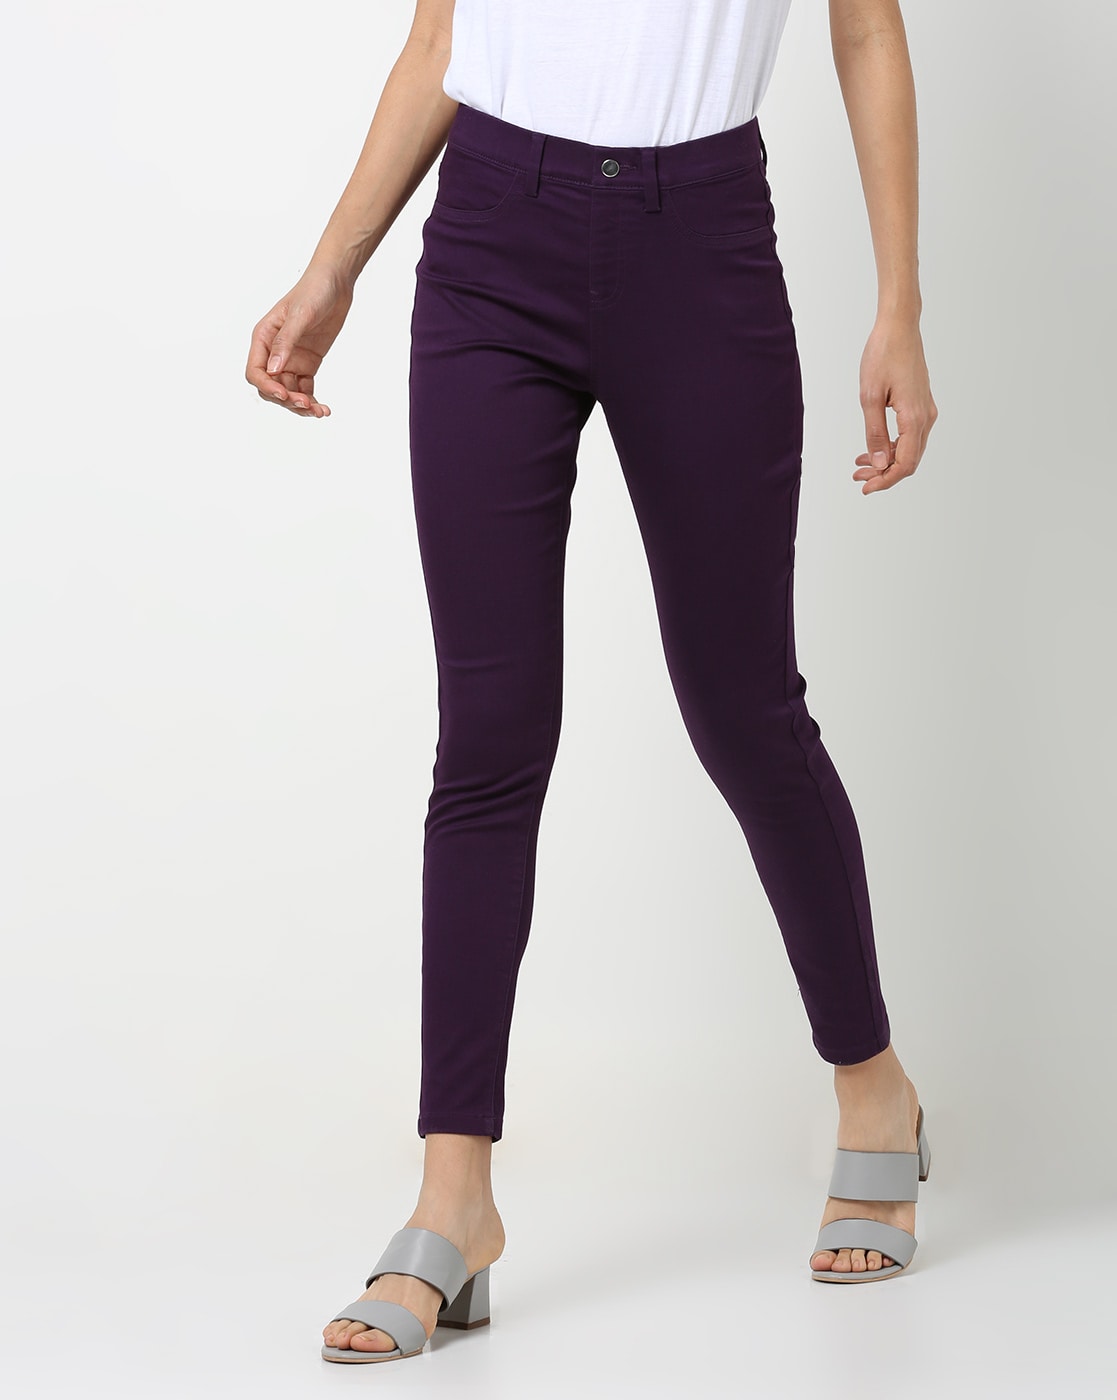 ELLEVEN Regular Fit Women Purple Trousers  Buy ELLEVEN Regular Fit Women Purple  Trousers Online at Best Prices in India  Flipkartcom